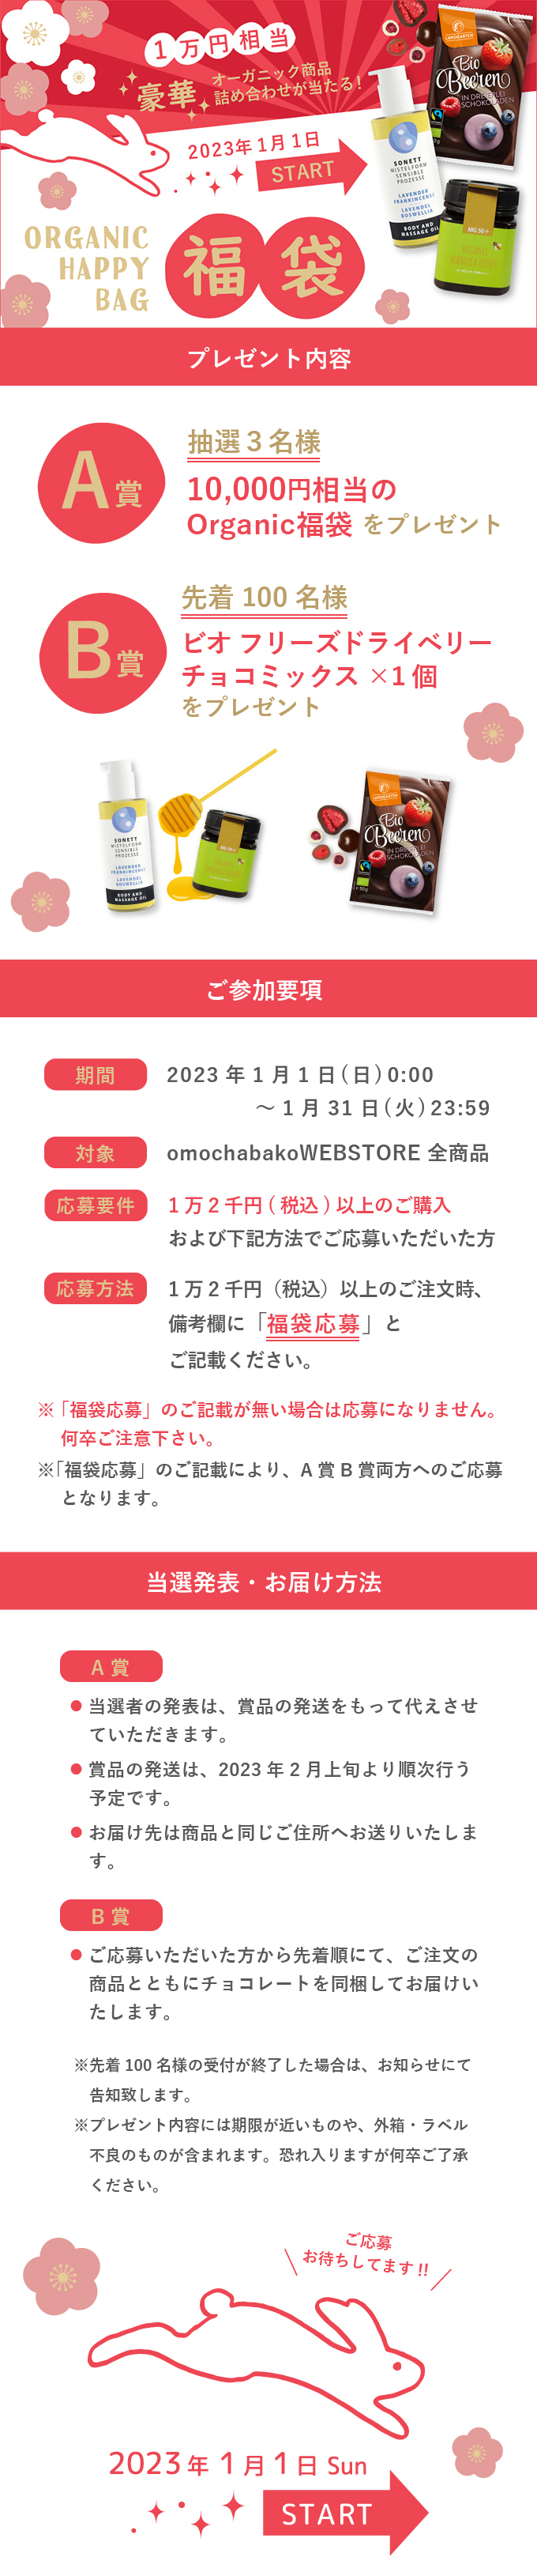 オーガニック福袋キャンペーン【1万円相当が当たる！】